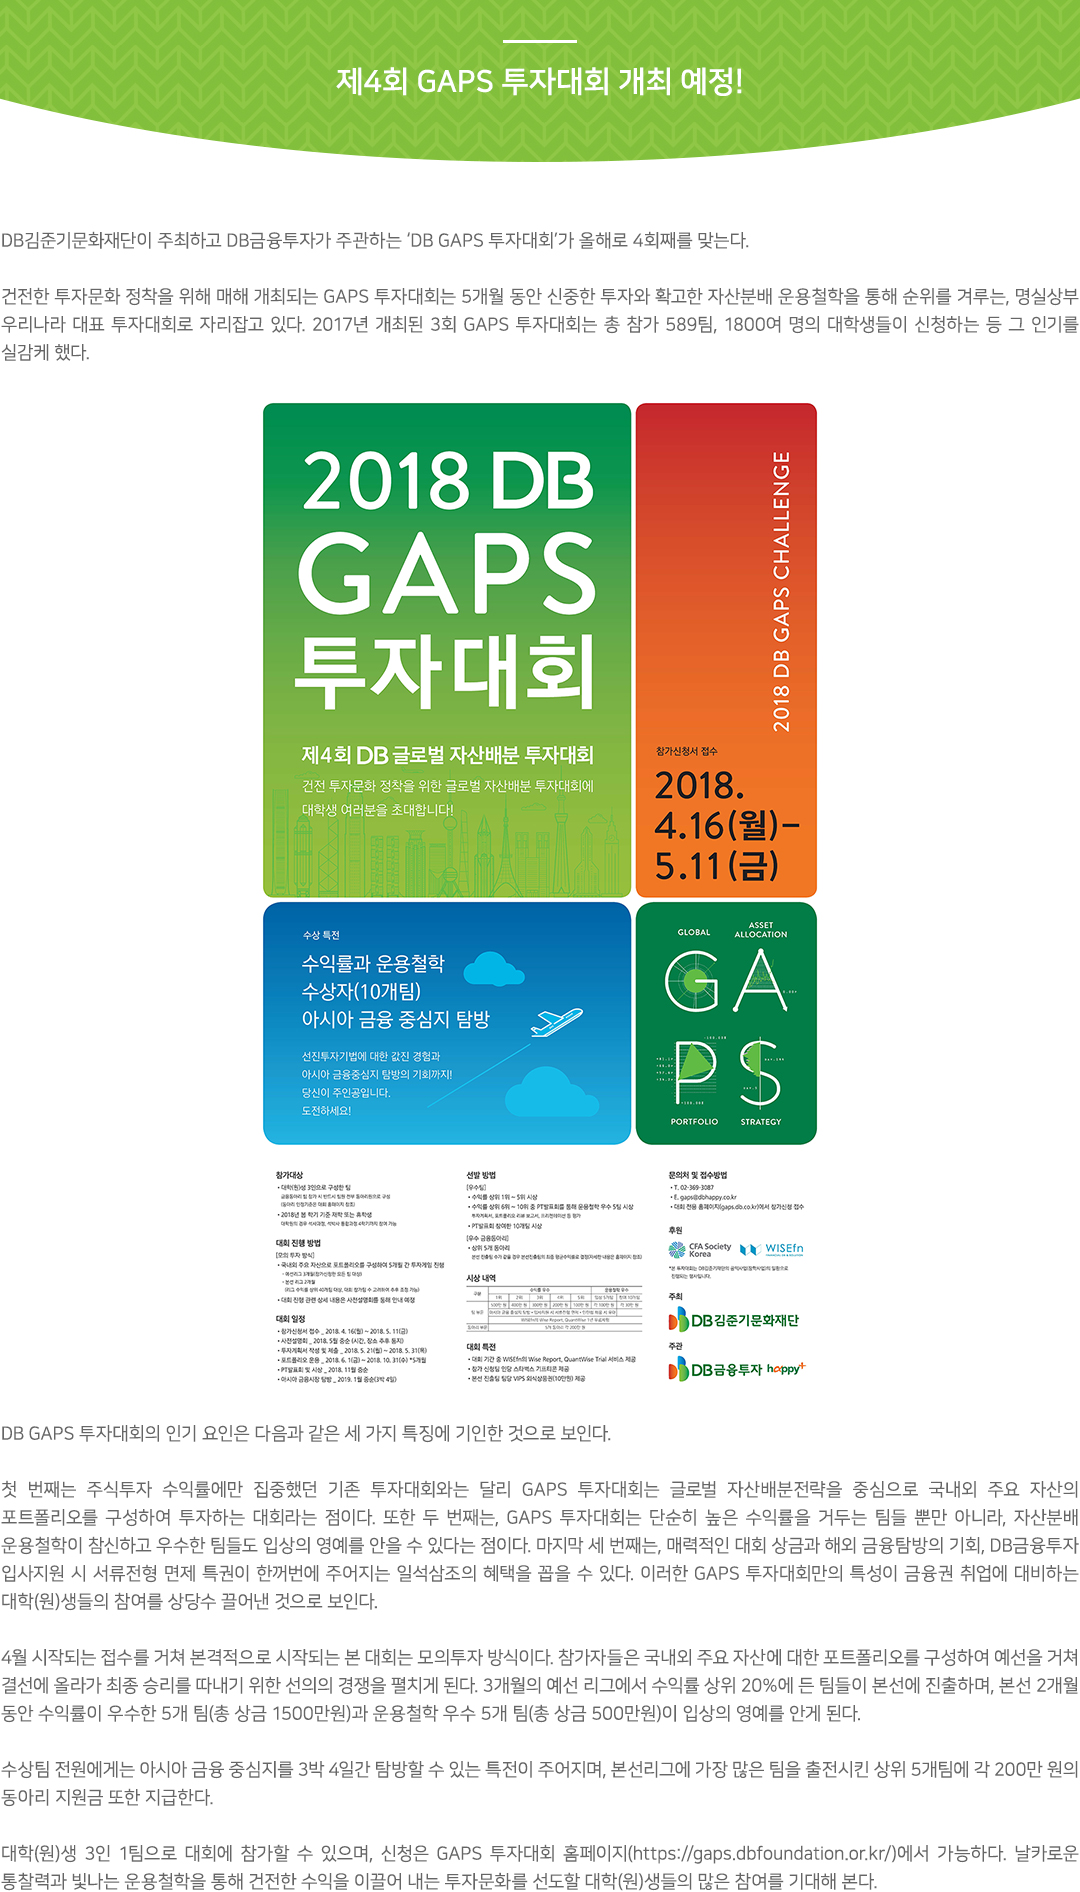 제4회 DB GAPS 투자대회 개최 예정